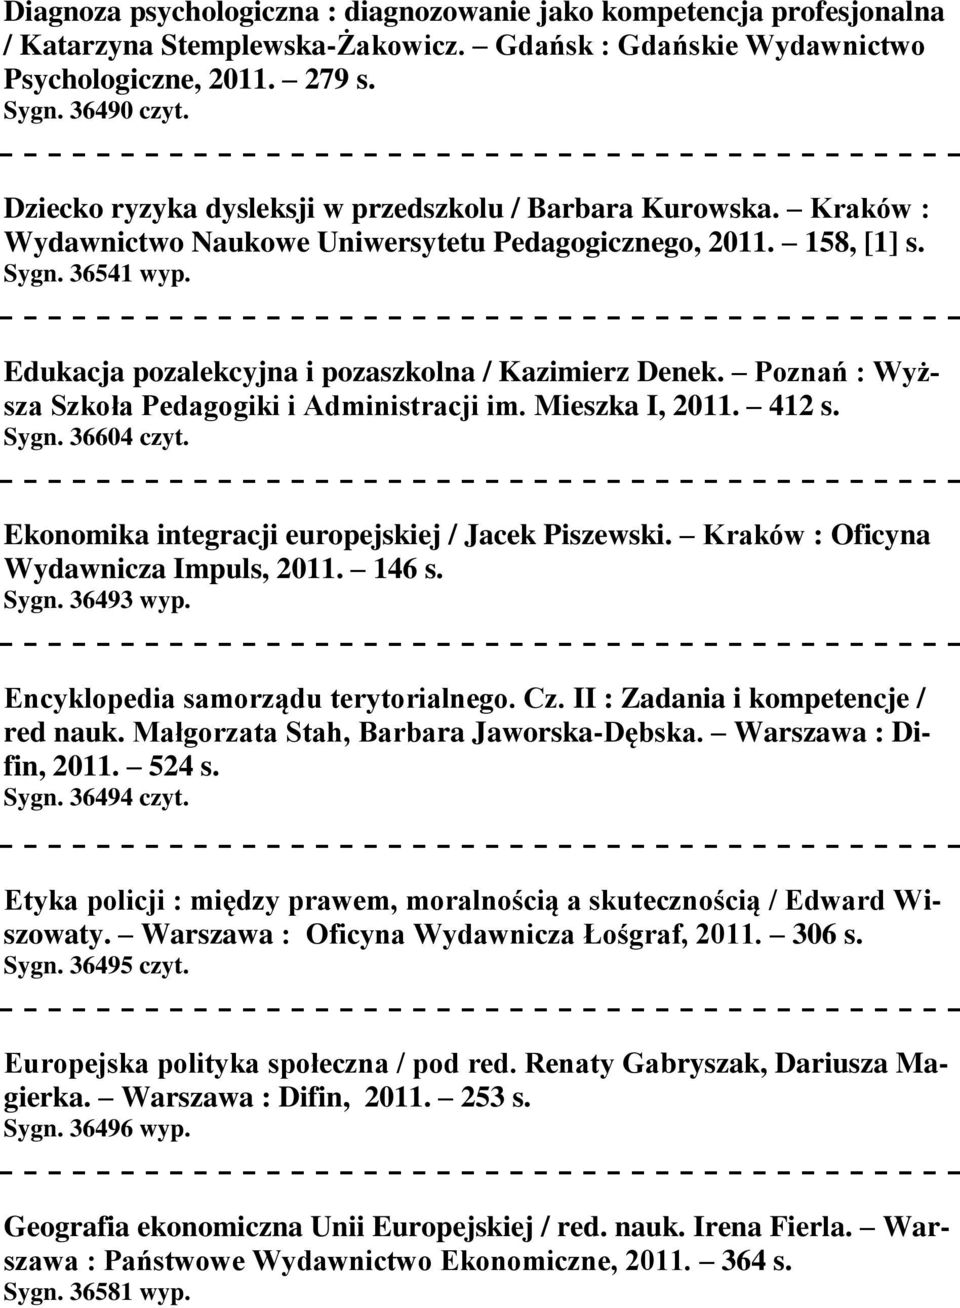 Edukacja pozalekcyjna i pozaszkolna / Kazimierz Denek. Poznań : Wyższa Szkoła Pedagogiki i Administracji im. Mieszka I, 2011. 412 s. Sygn. 36604 czyt.